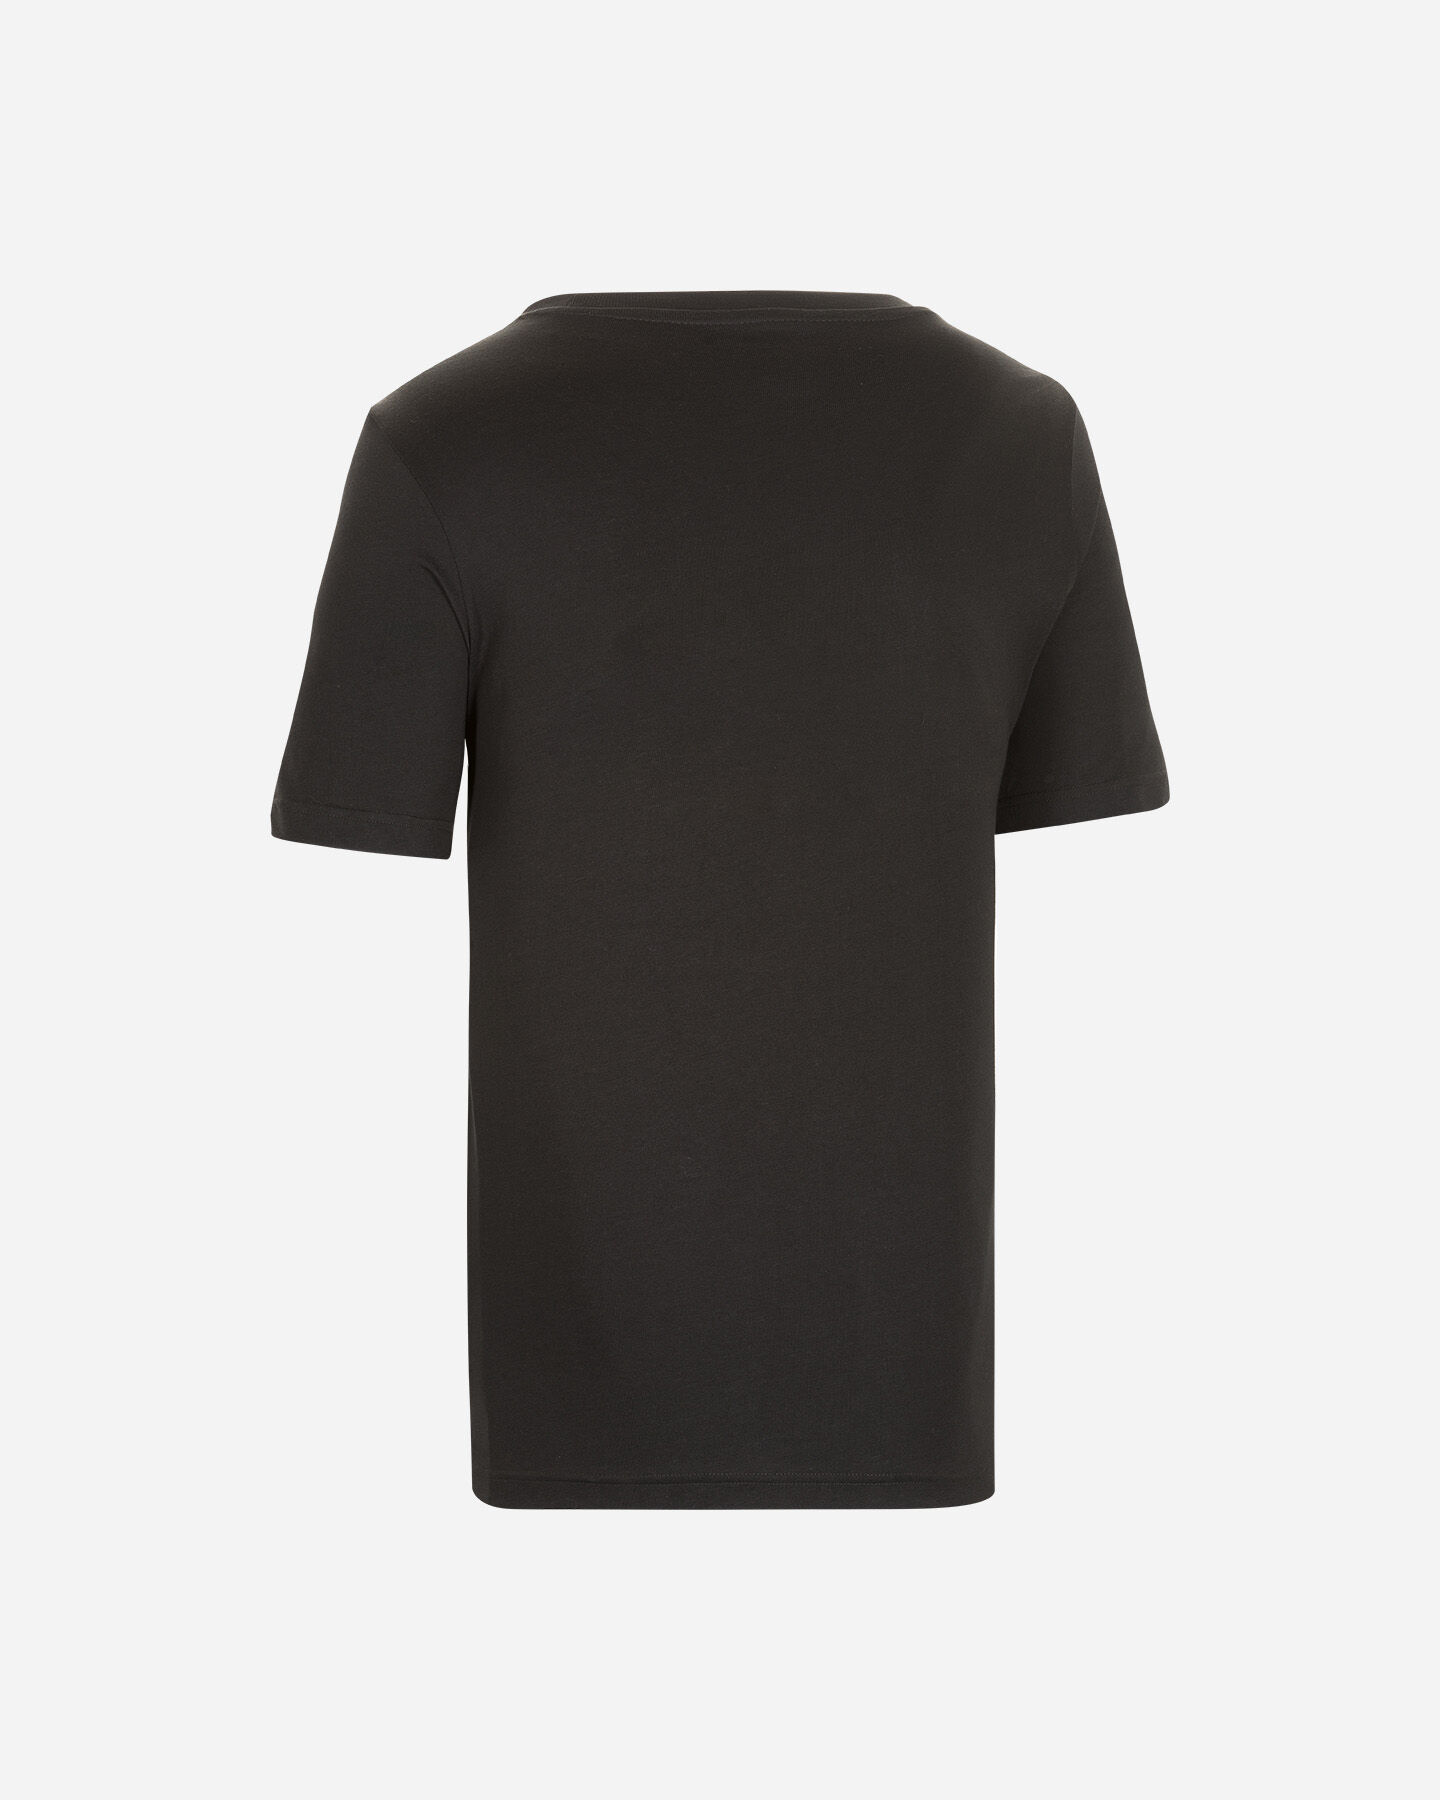  T-Shirt ADIDAS BOSS LOGO M S5274329|UNI|XS scatto 1